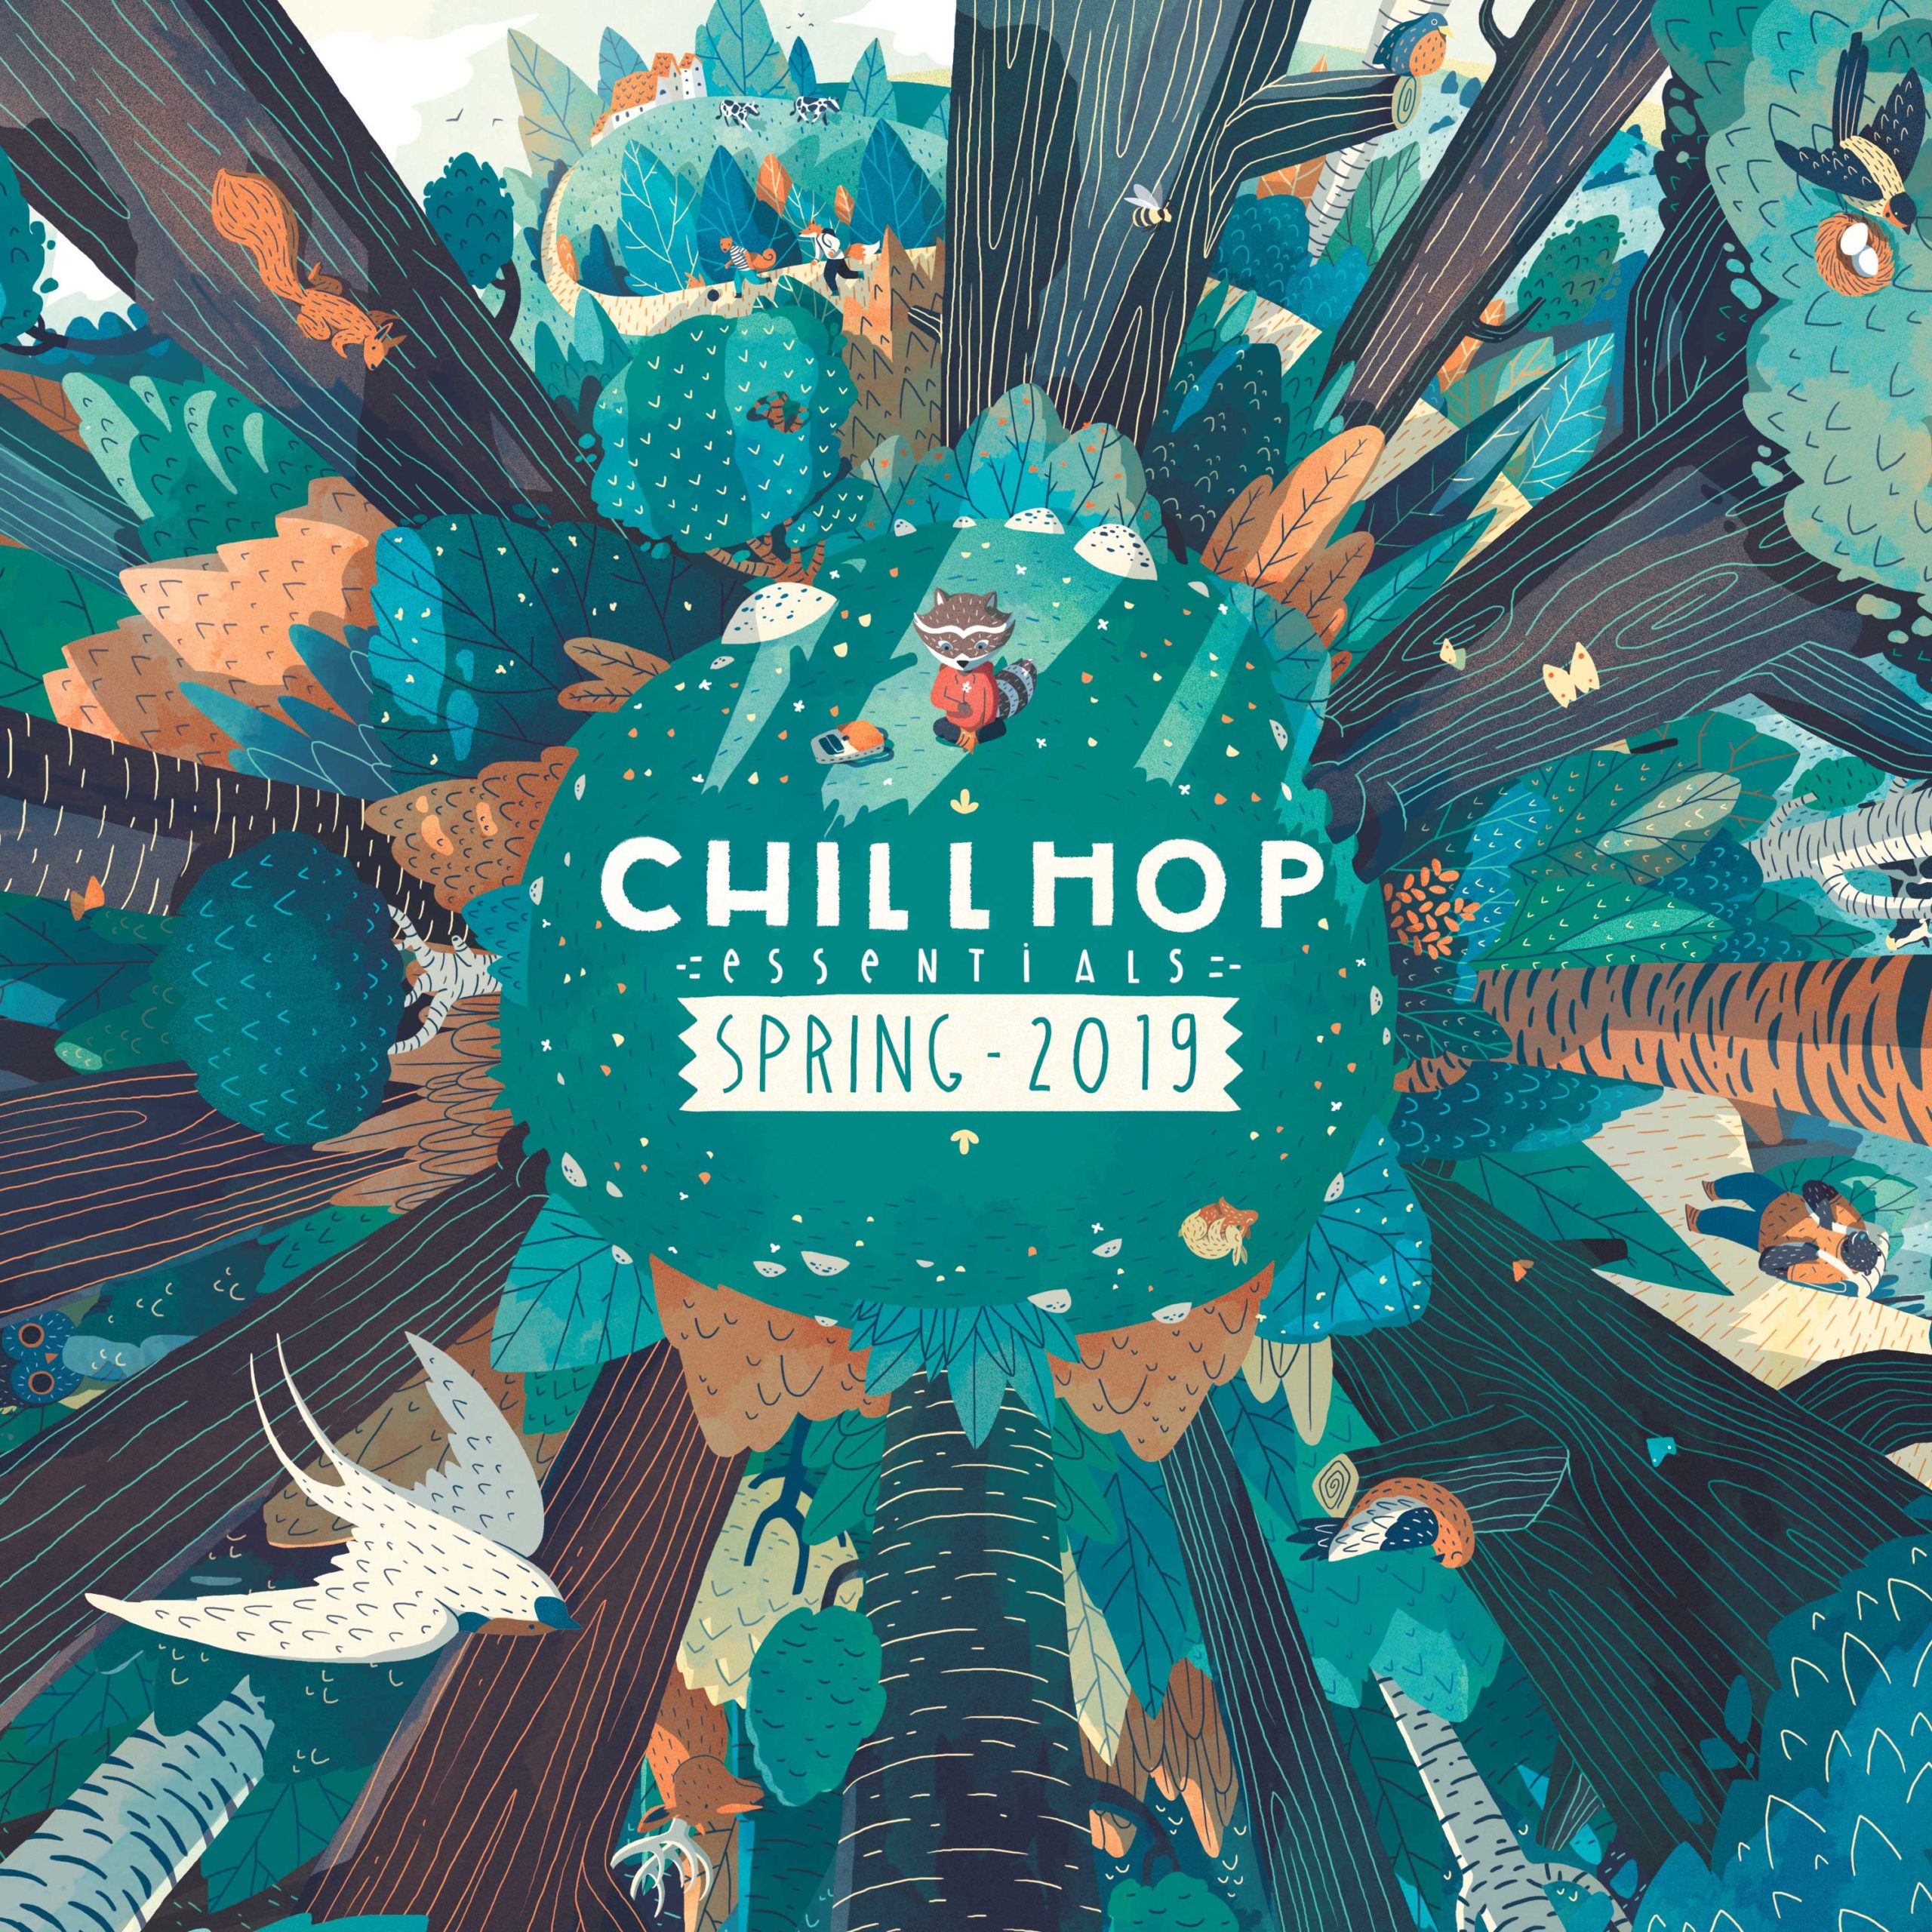 Chillhop Essentials Spring 2019 - Chillhop Music